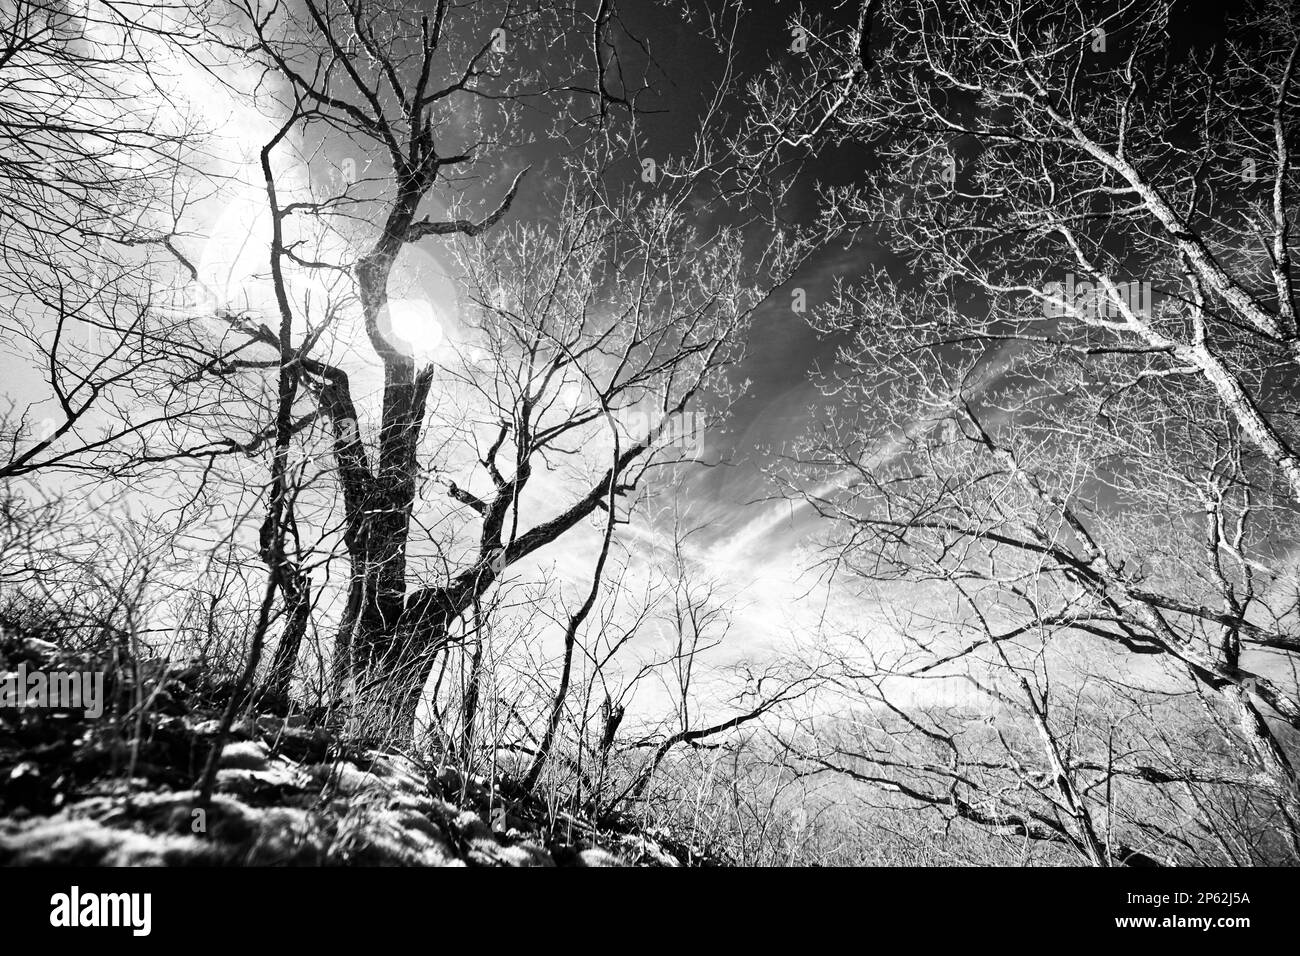 Un'immagine infrarossa in bianco e nero di alcuni alberi dormienti contro un cielo a contrasto in una tarda mattinata invernale. L'immagine evoca il caos e i pensieri ramificati. Foto Stock